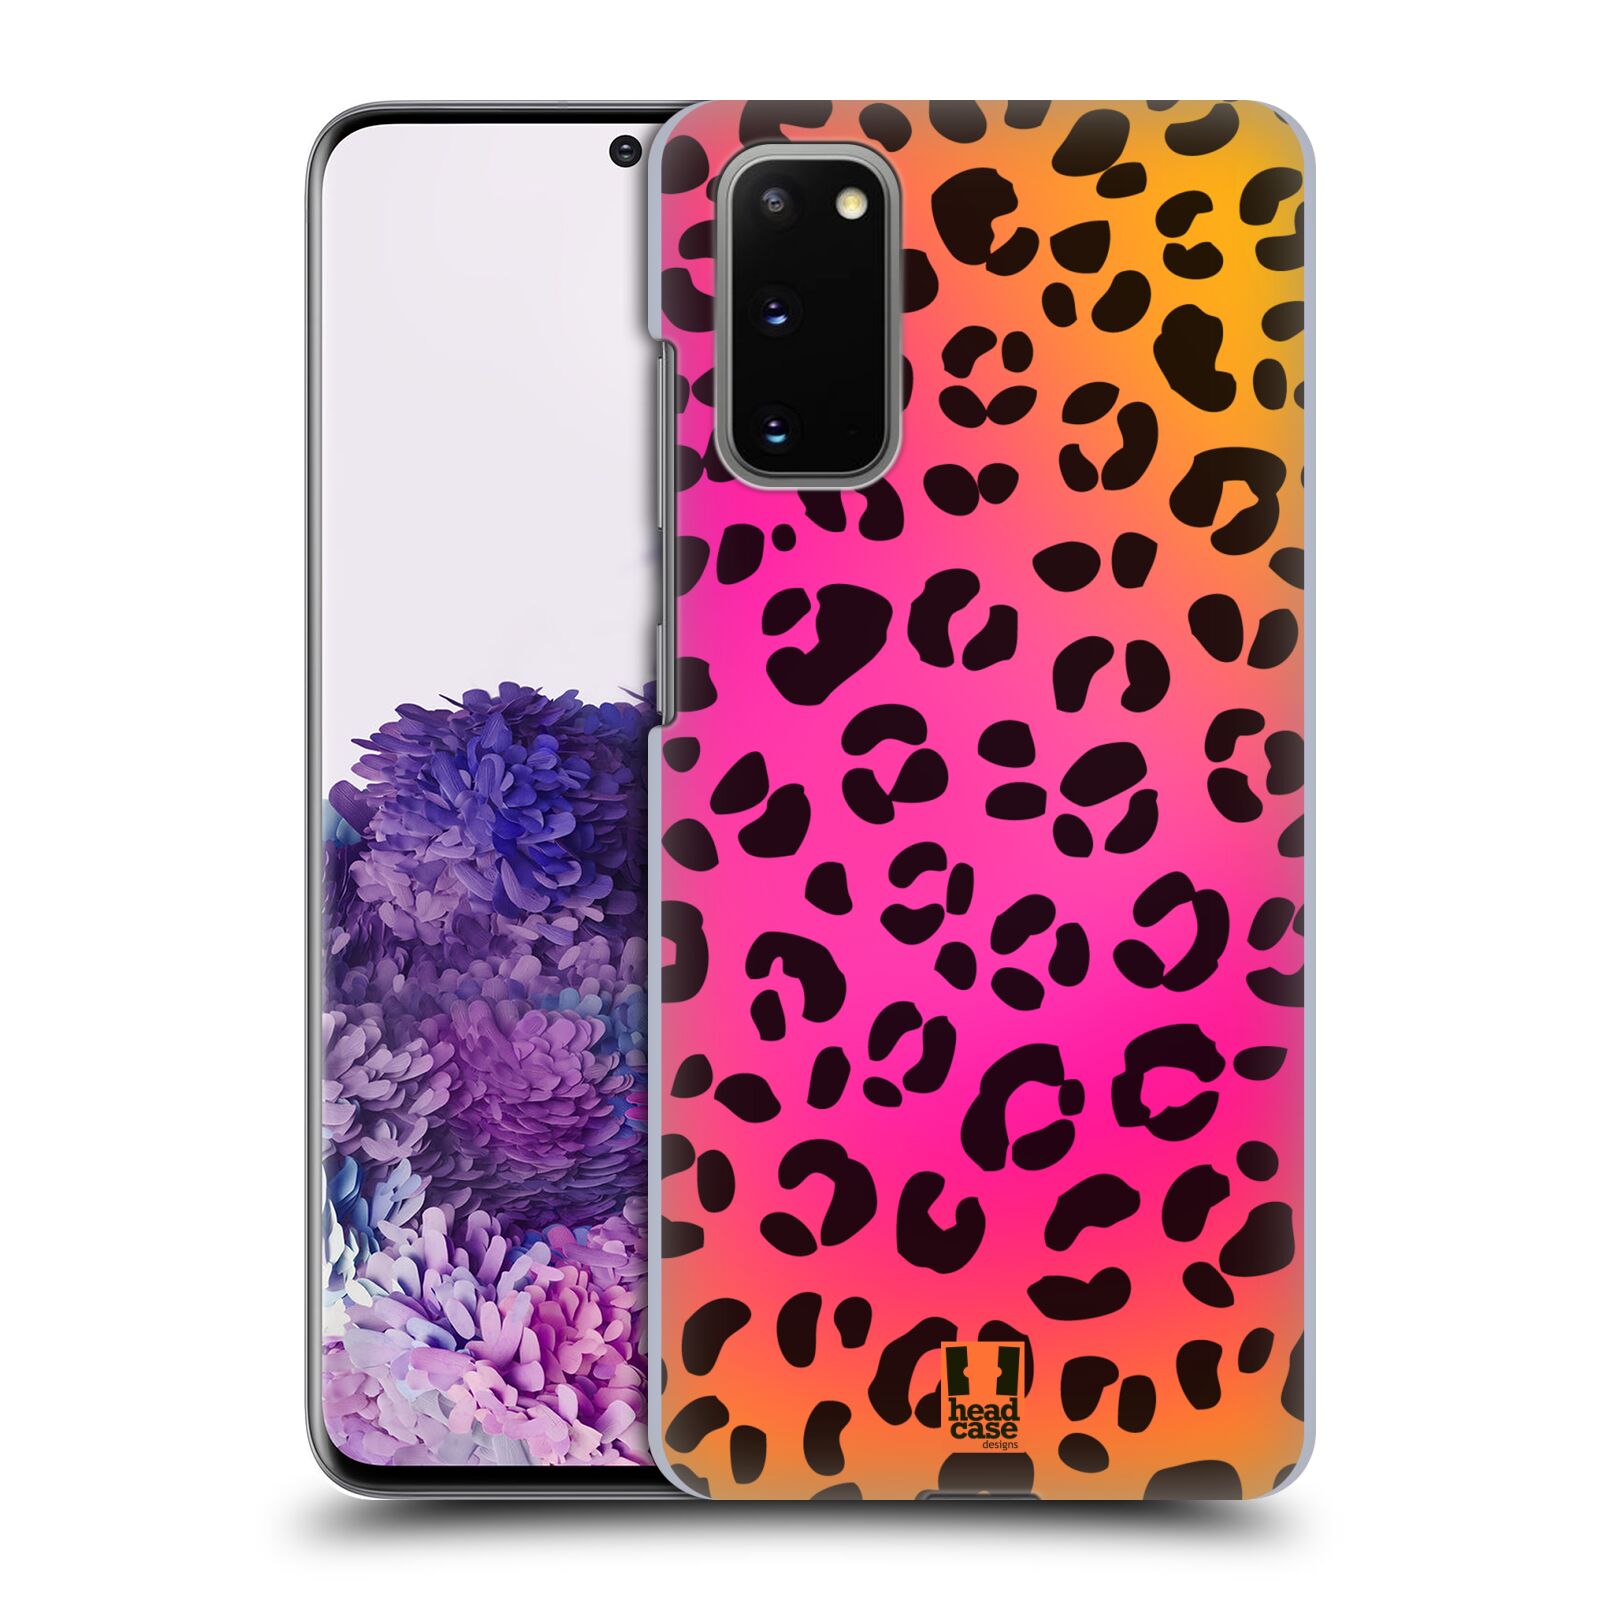 Pouzdro na mobil Samsung Galaxy S20 - HEAD CASE - vzor Divočina zvíře růžový leopard